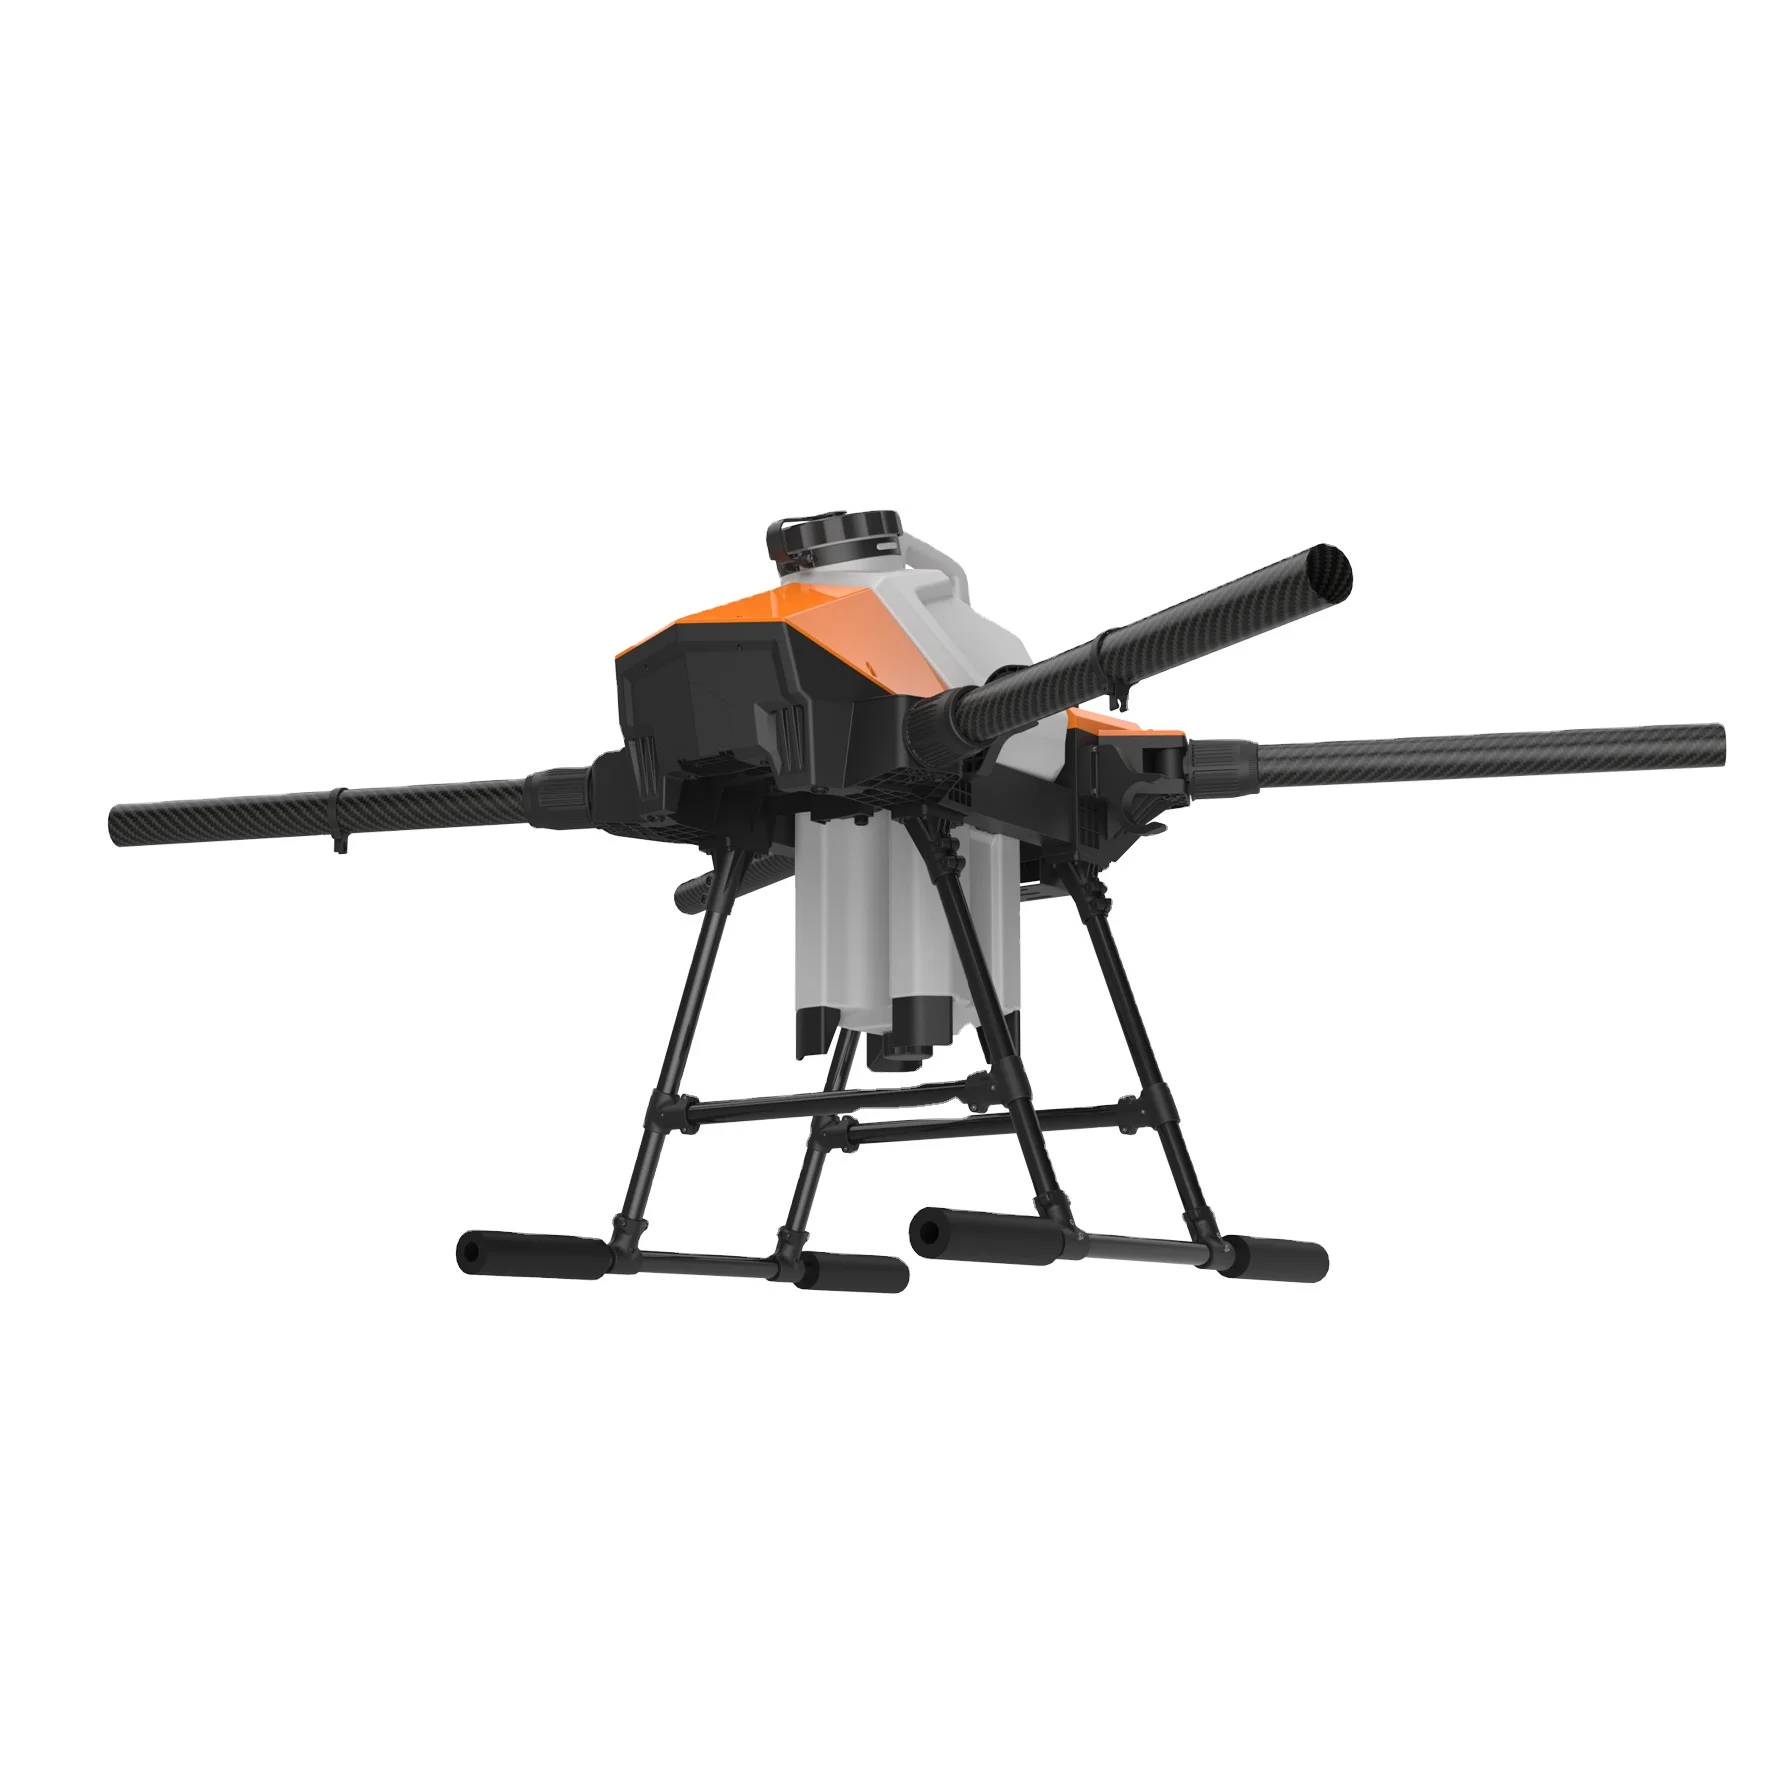 

10L UAV drone 10KG agricultural drone EFT G410 drone uav four-axis spray frame 10L frame folding plug frame kit agricultural UAV, Orange